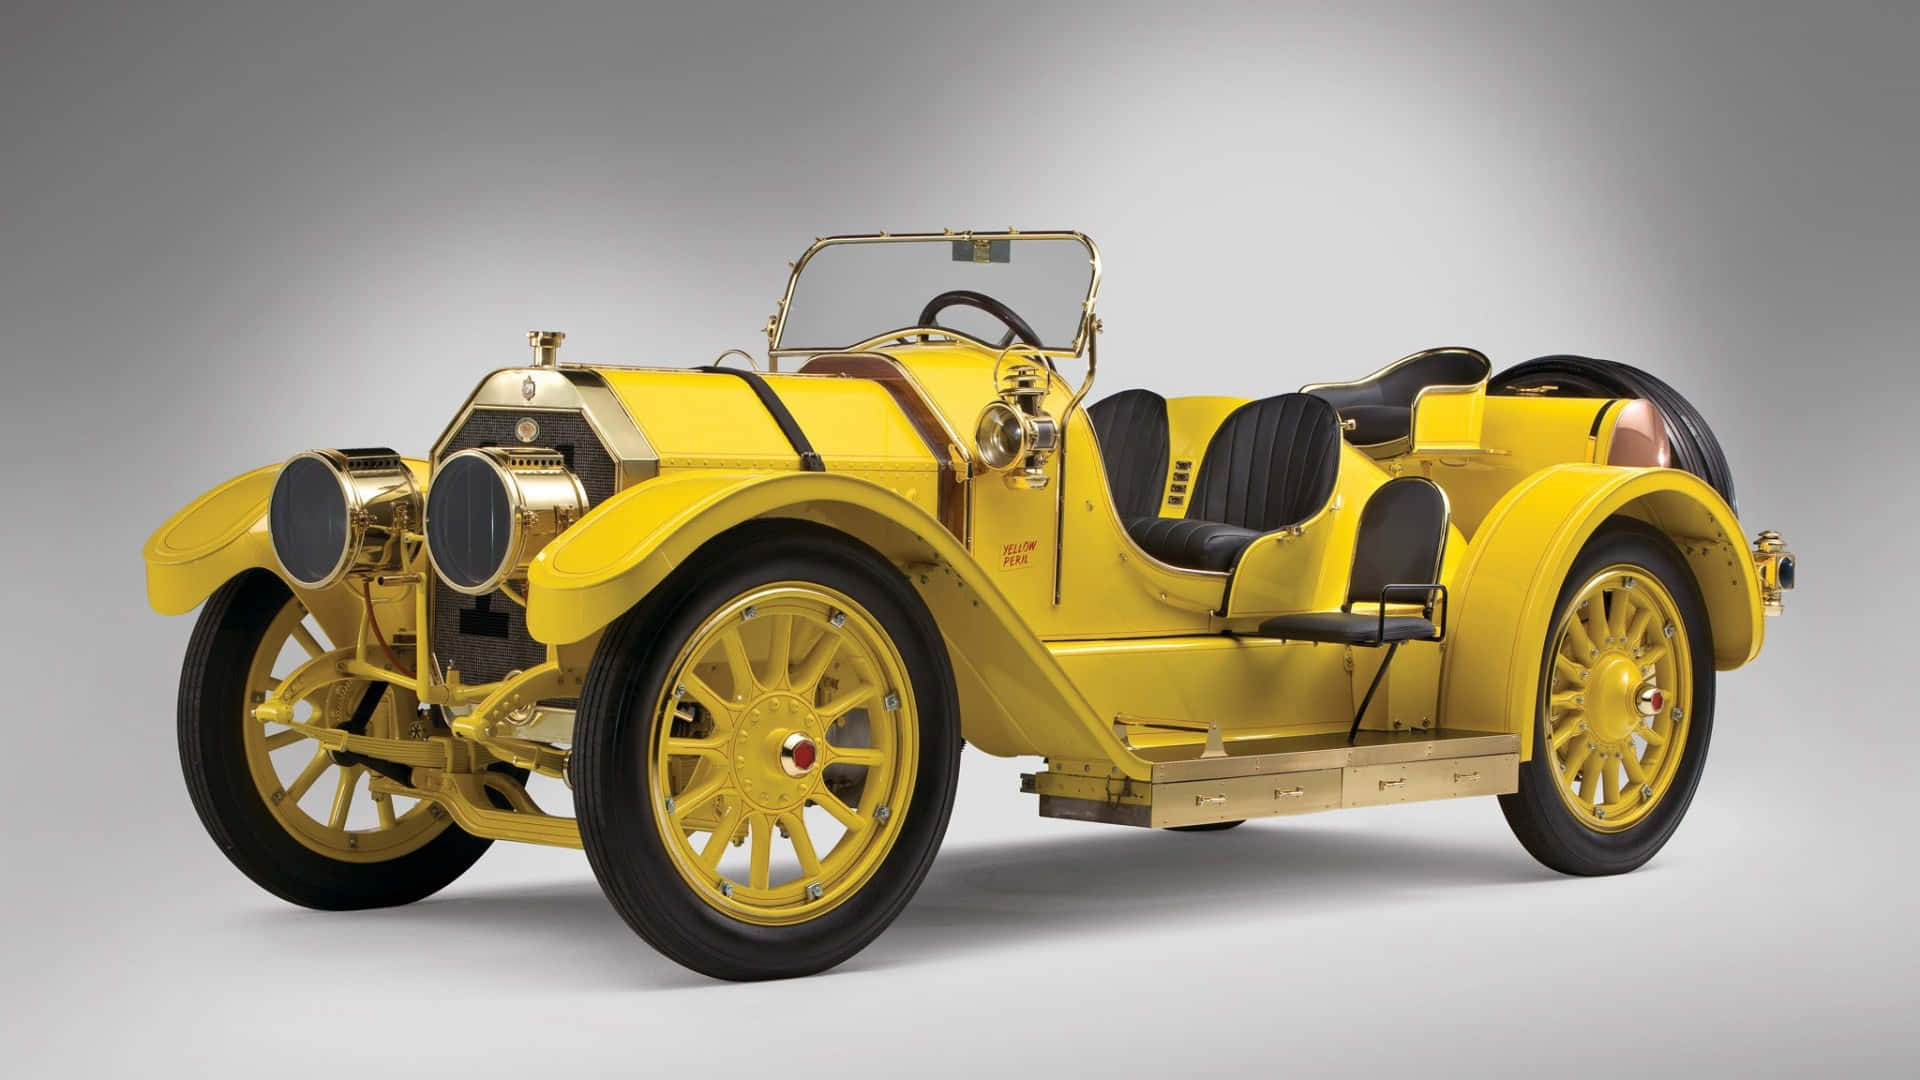 Luksuriøse gule vintage bilbilleder pynte din skærm.